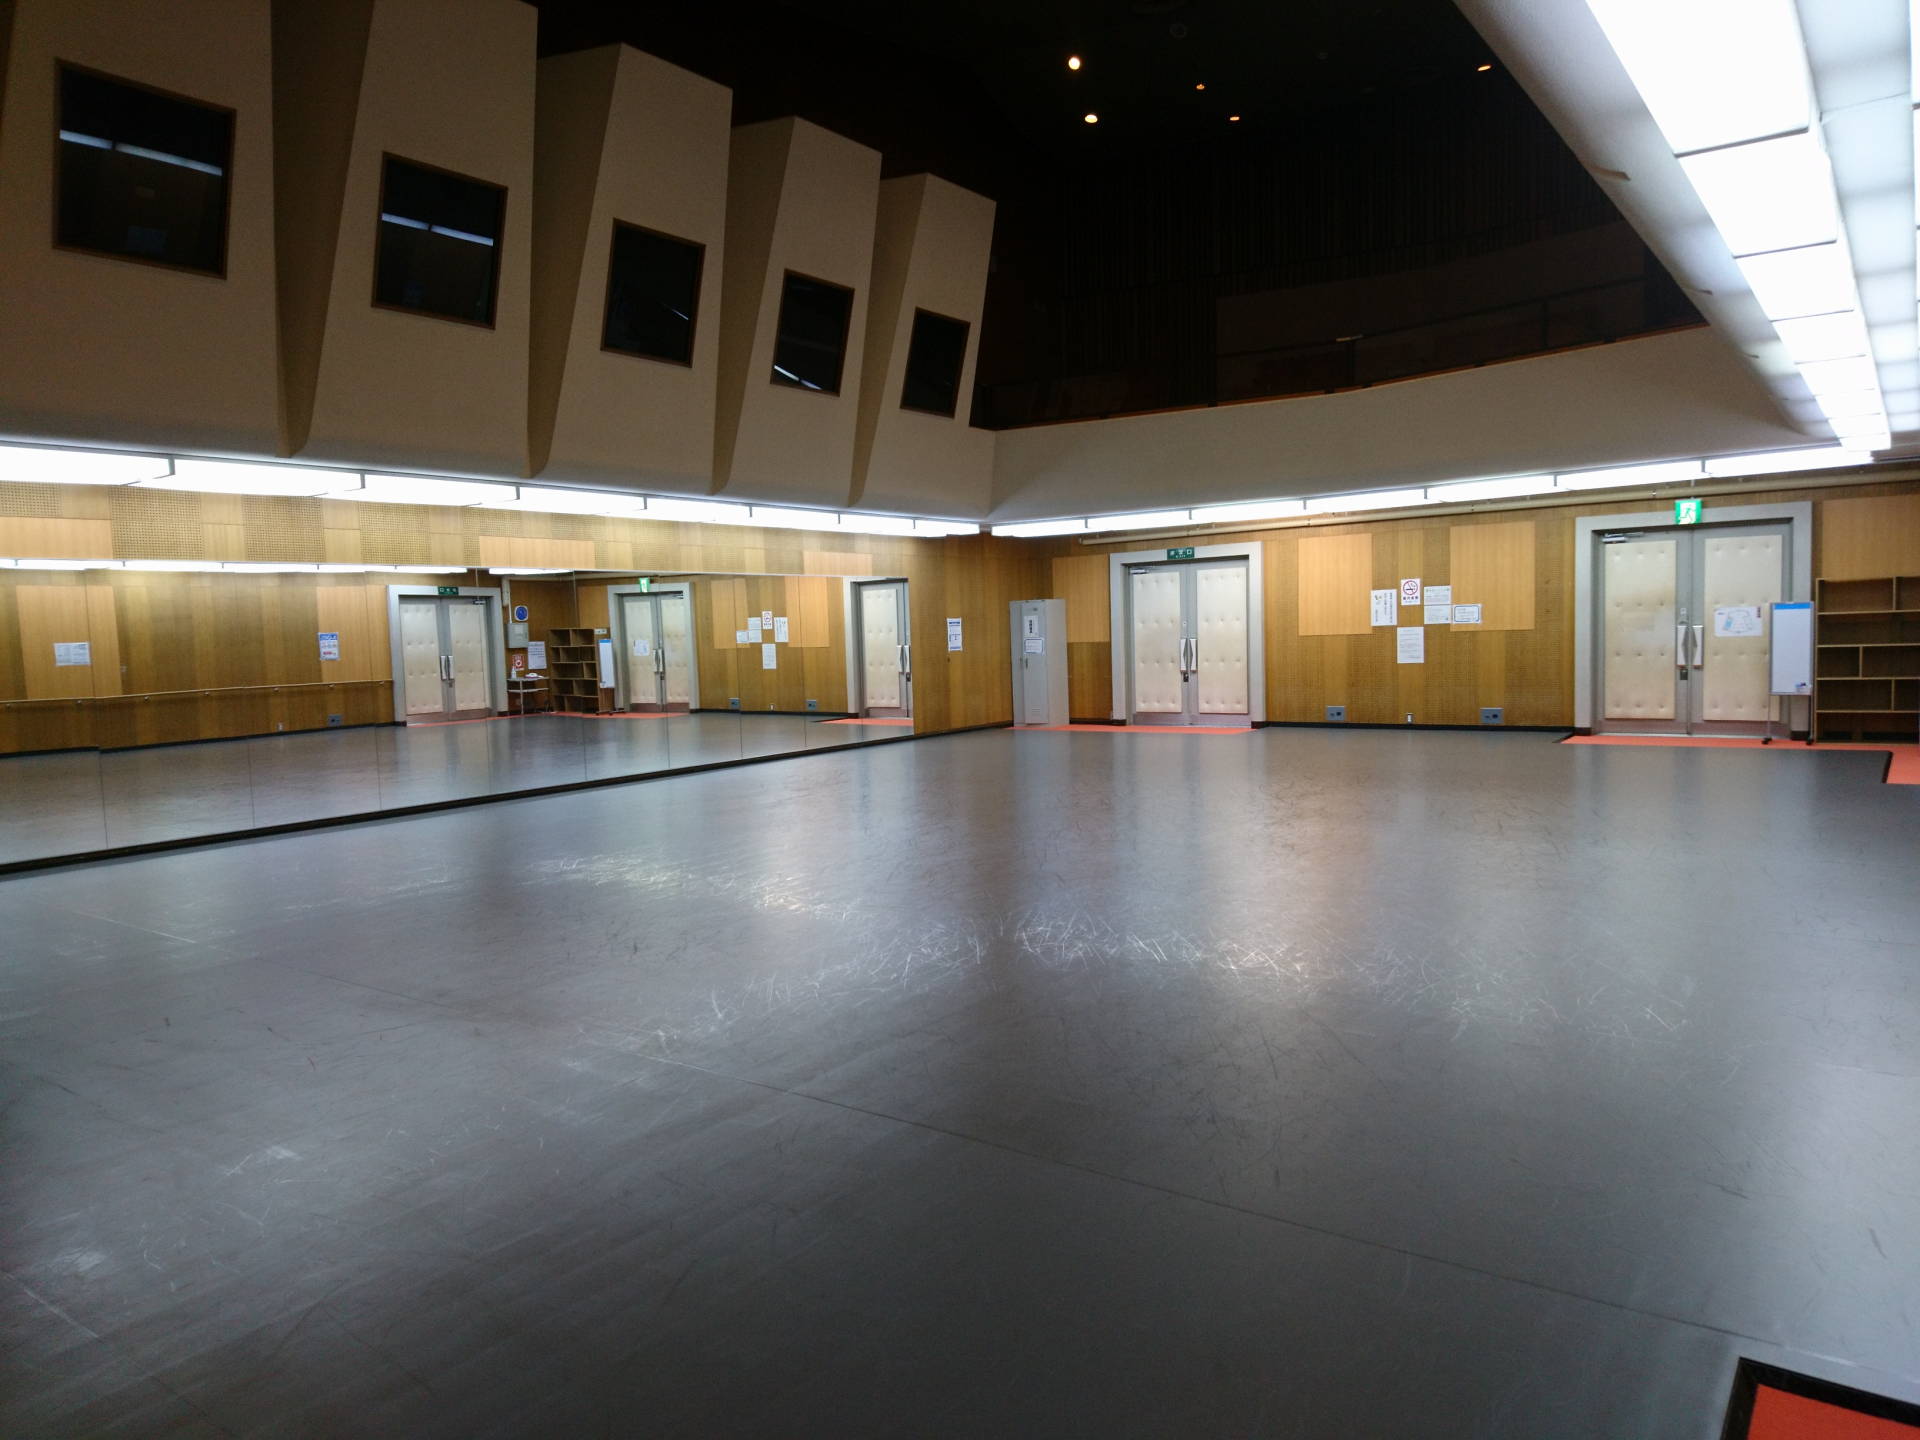 練習室使用料金 ご利用方法について 福岡市民会館